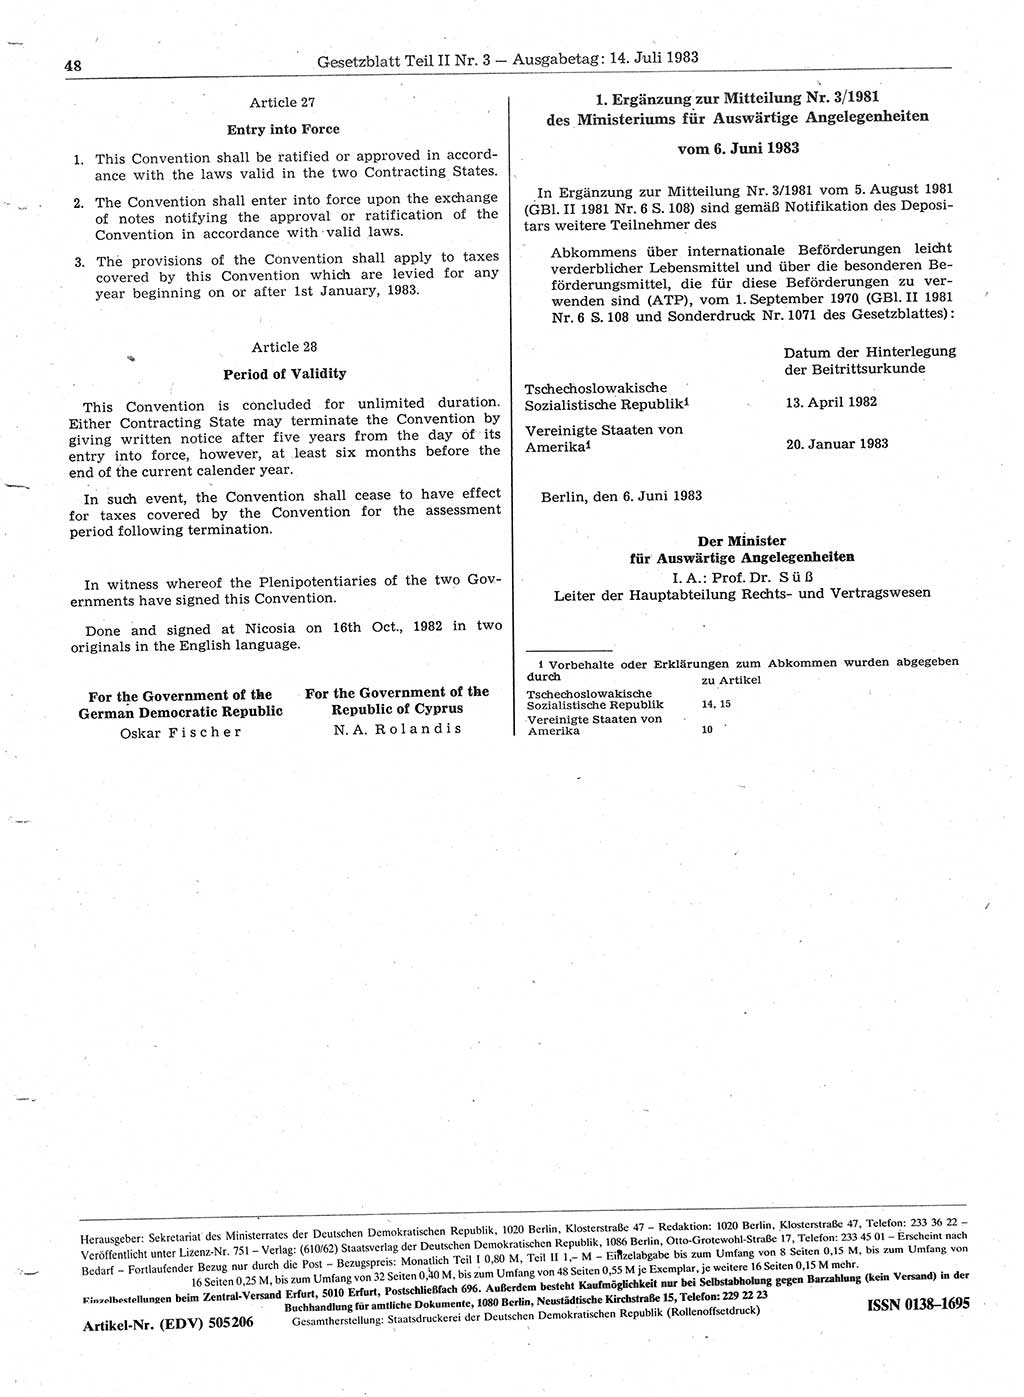 Gesetzblatt (GBl.) der Deutschen Demokratischen Republik (DDR) Teil ⅠⅠ 1983, Seite 48 (GBl. DDR ⅠⅠ 1983, S. 48)